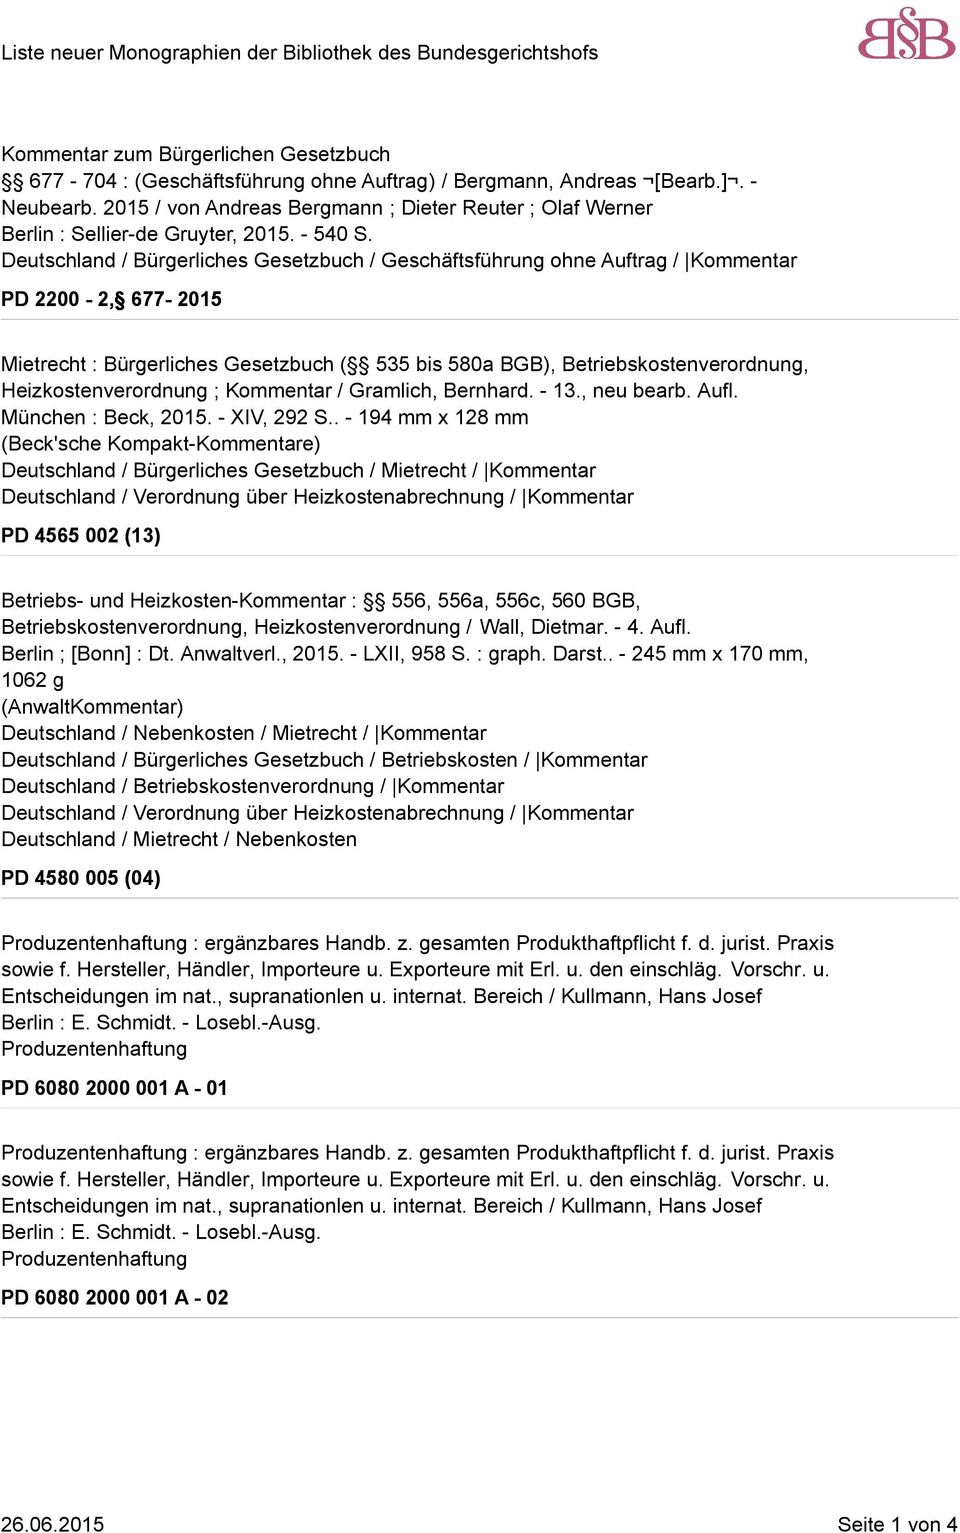 Deutschland / Bürgerliches Gesetzbuch / Geschäftsführung ohne Auftrag / Kommentar PD 2200-2, 677-2015 Mietrecht : Bürgerliches Gesetzbuch ( 535 bis 580a BGB), Betriebskostenverordnung,